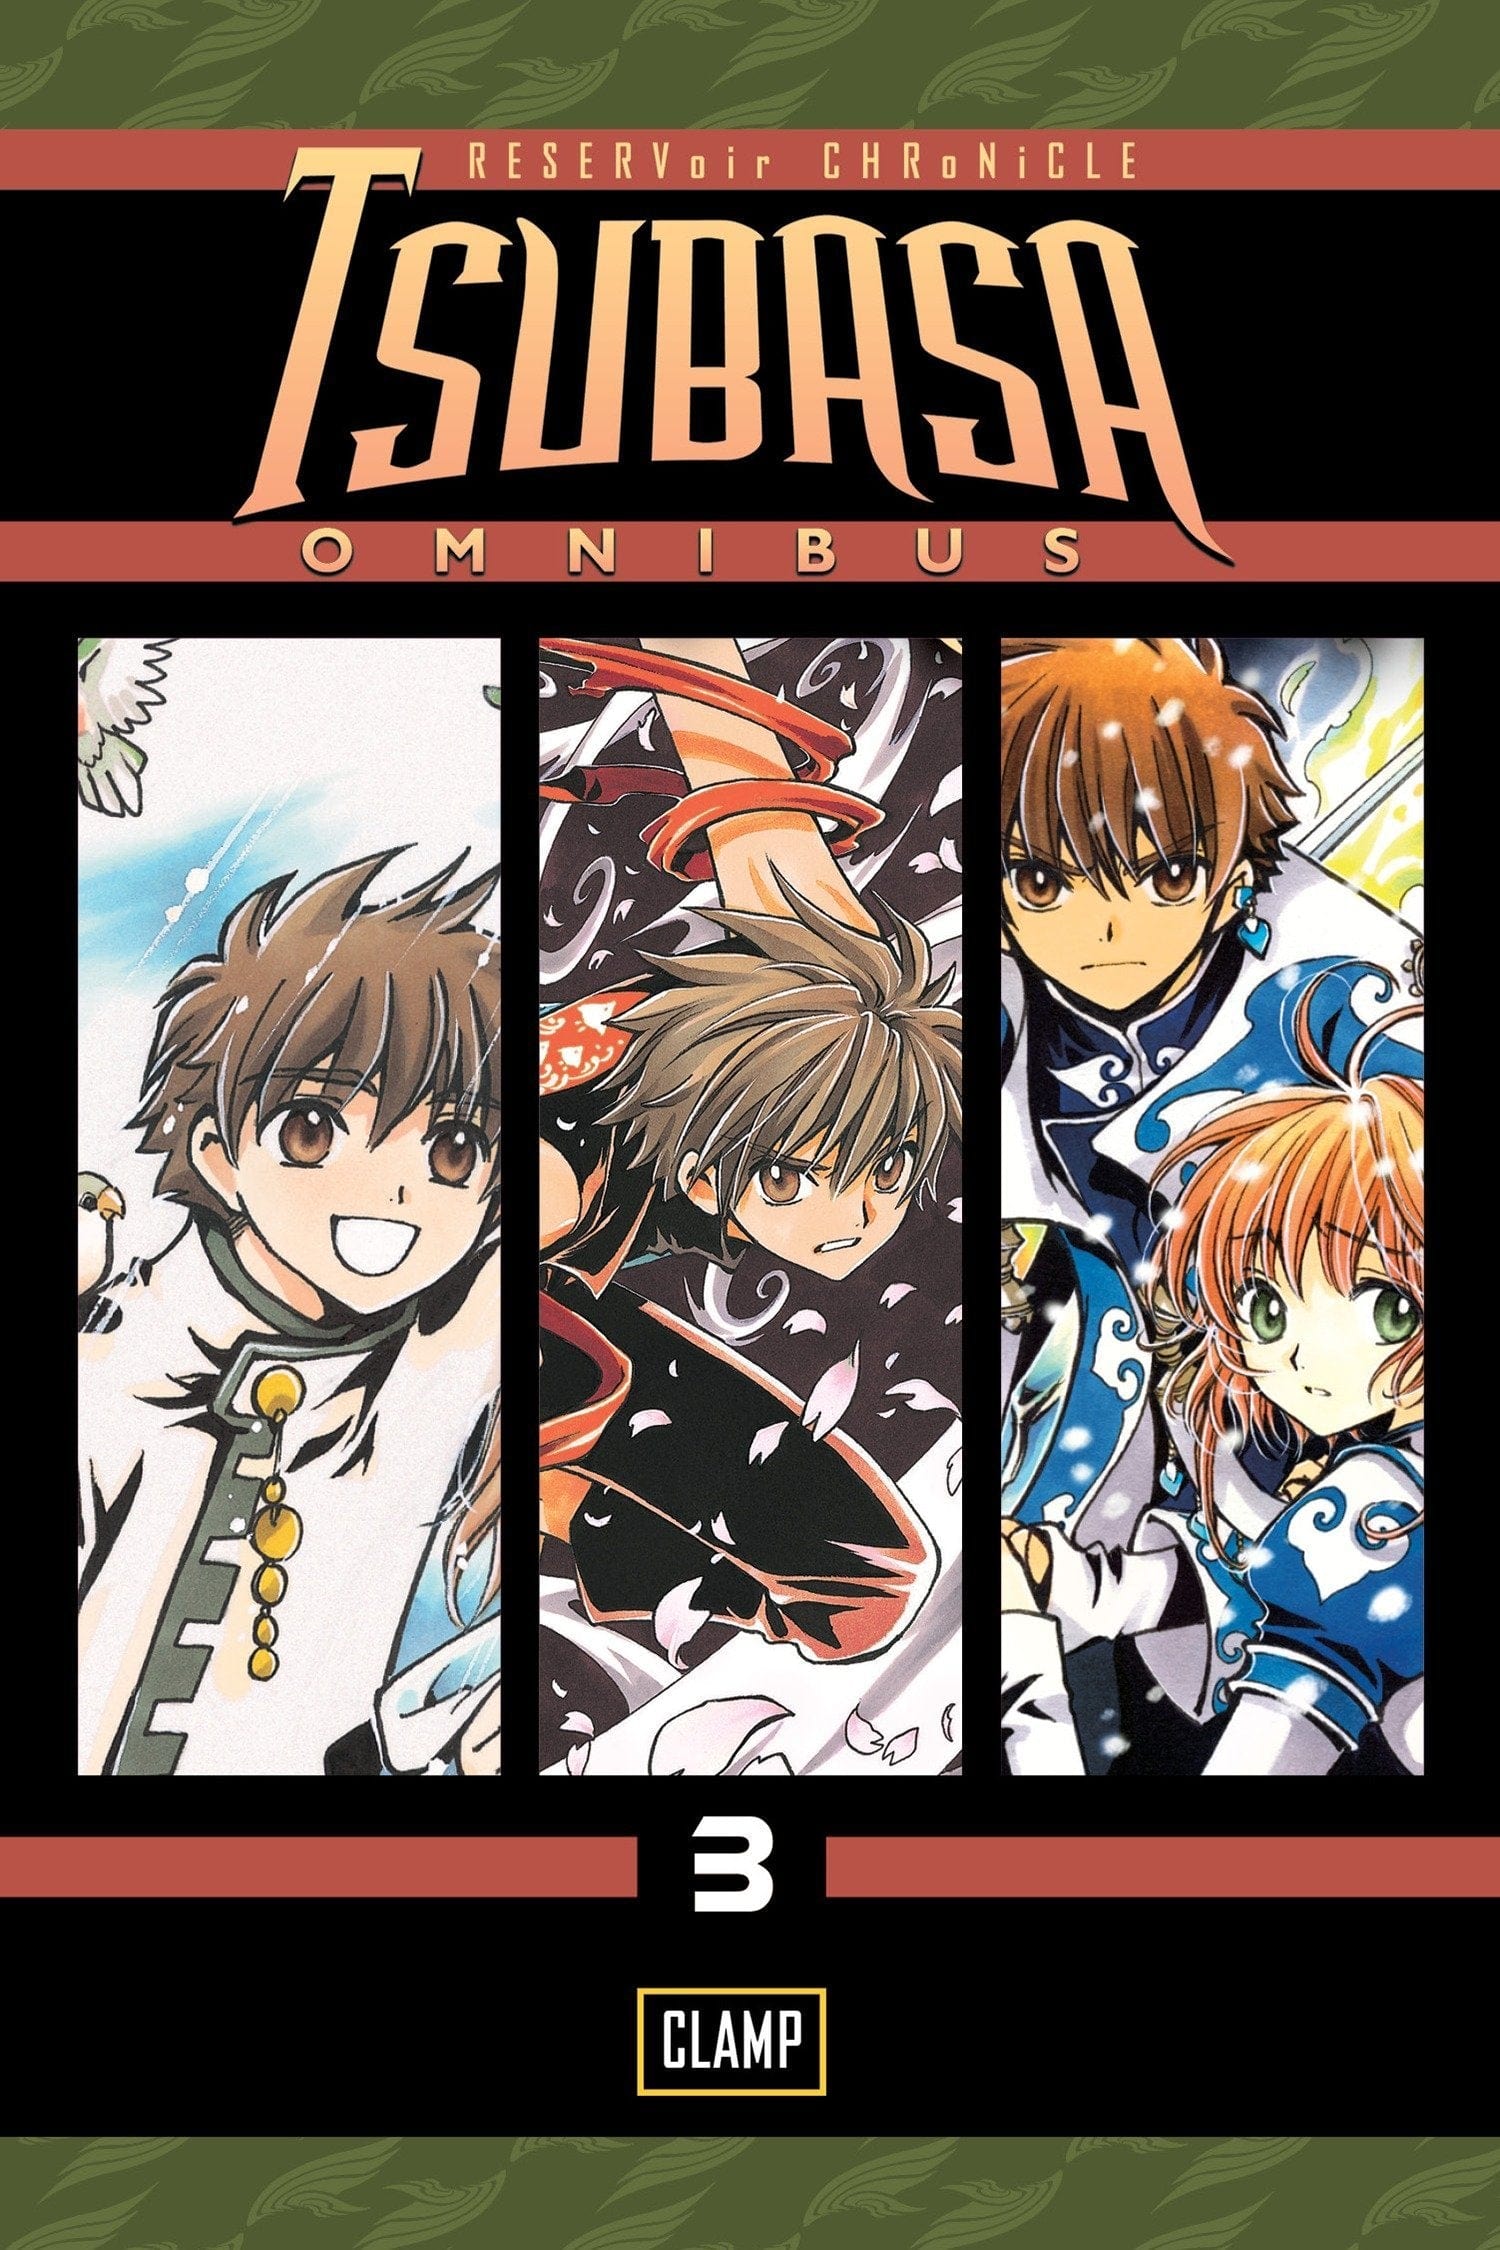 Tsubasa: Omnibus Vol. 3 - Third Eye